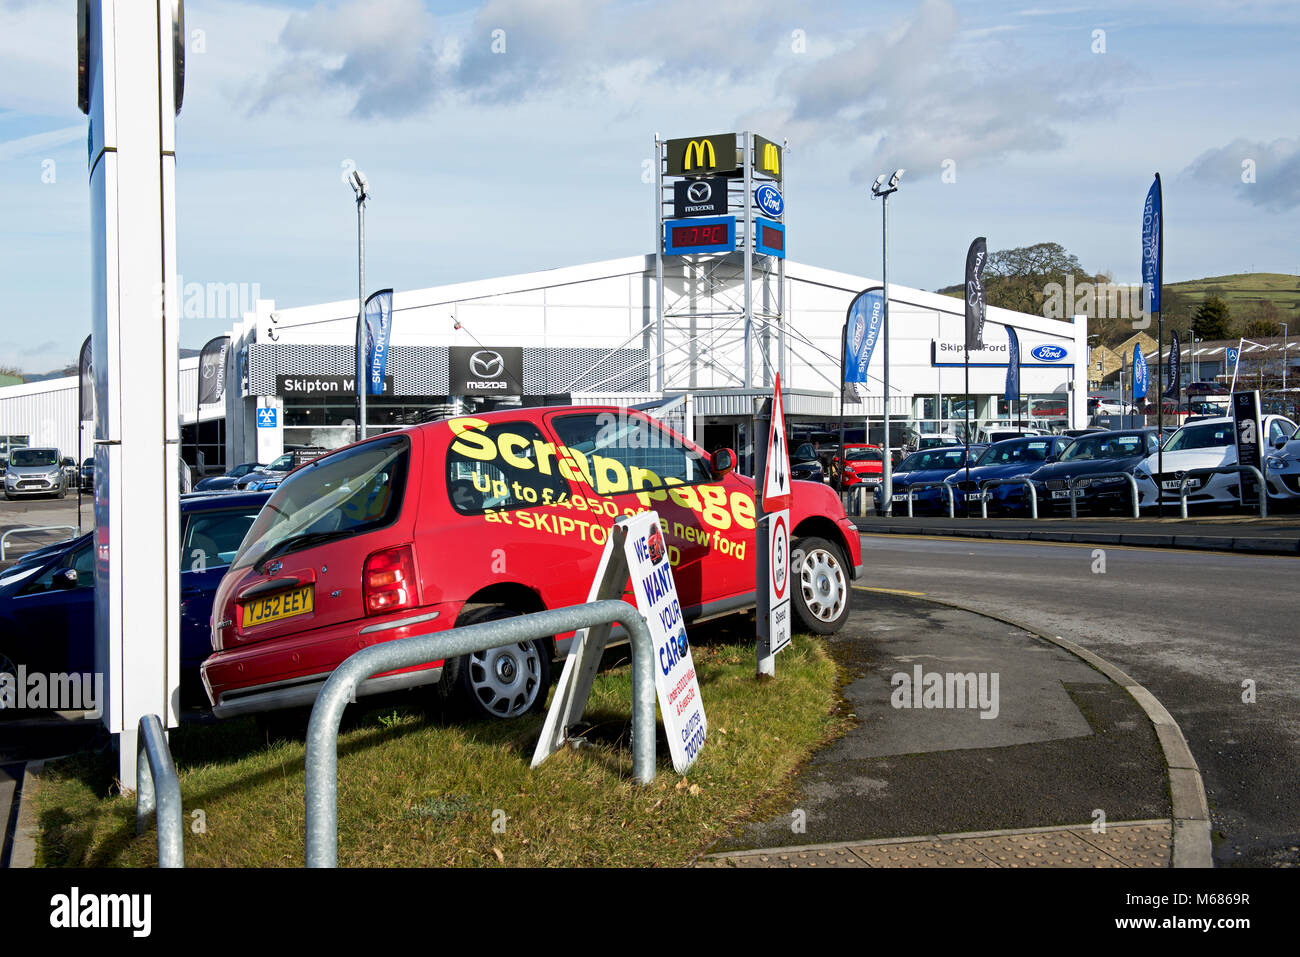 Rottamazione auto schema pubblicizzati, in Inghilterra, Regno Unito Foto Stock